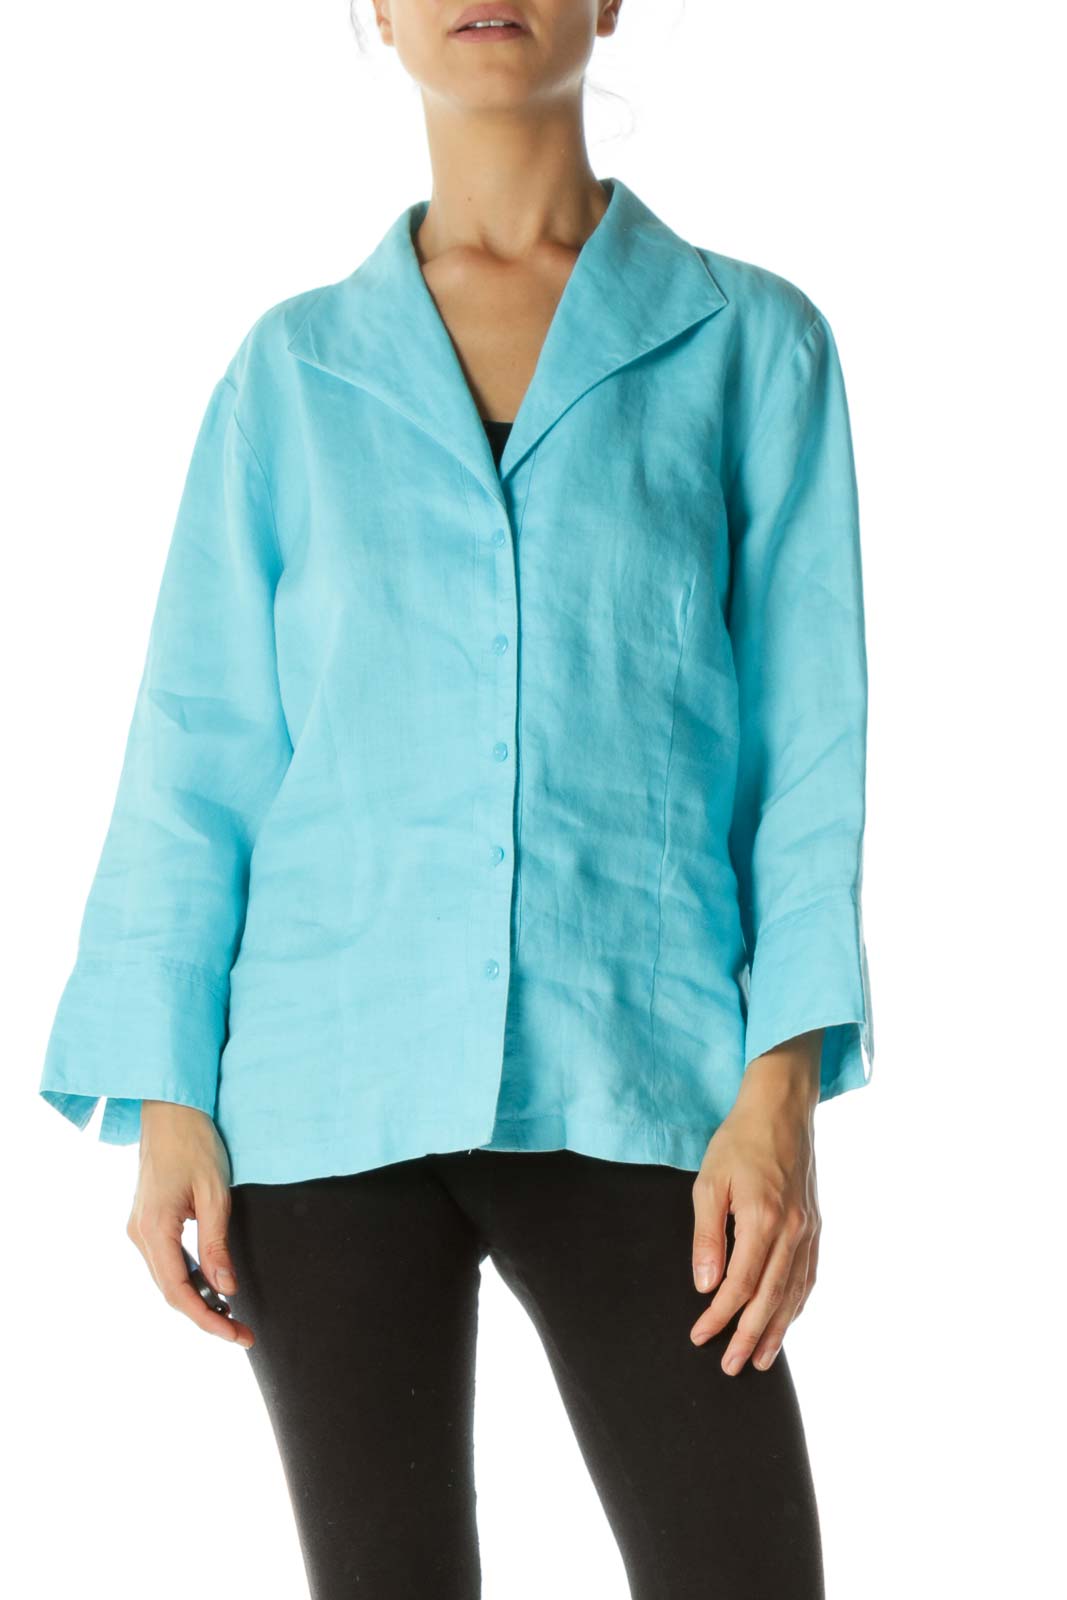 SilkRoll - Blue Linen Shirt Linen | SilkRoll